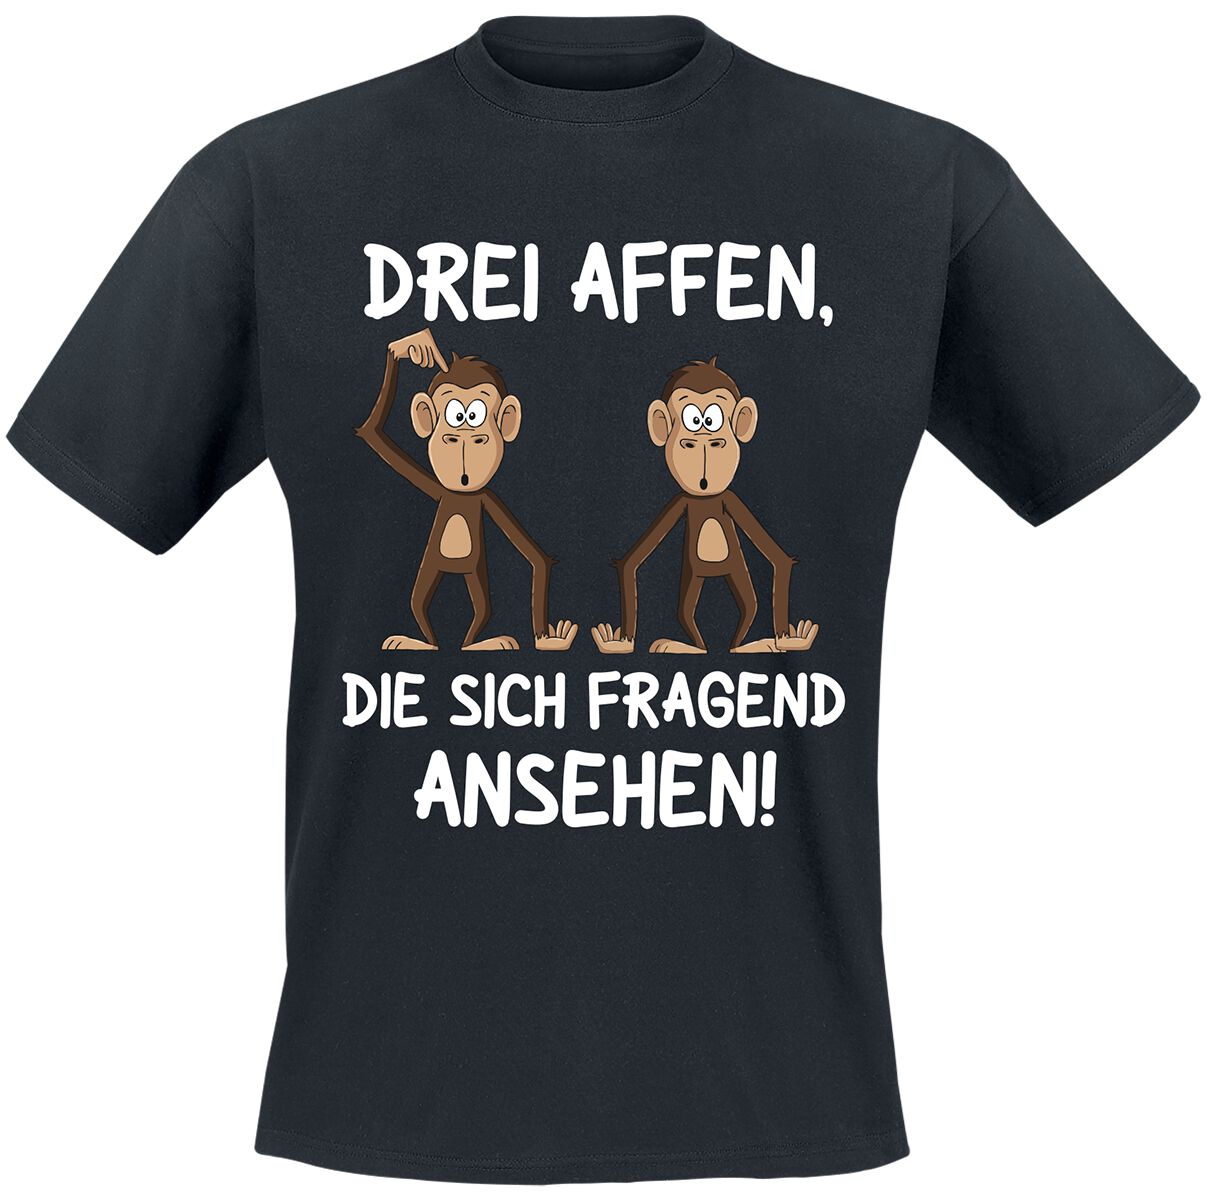 Tierisch T-Shirt - Drei Affen, die sich fragend ansehen! - M bis 4XL - für Männer - Größe L - schwarz